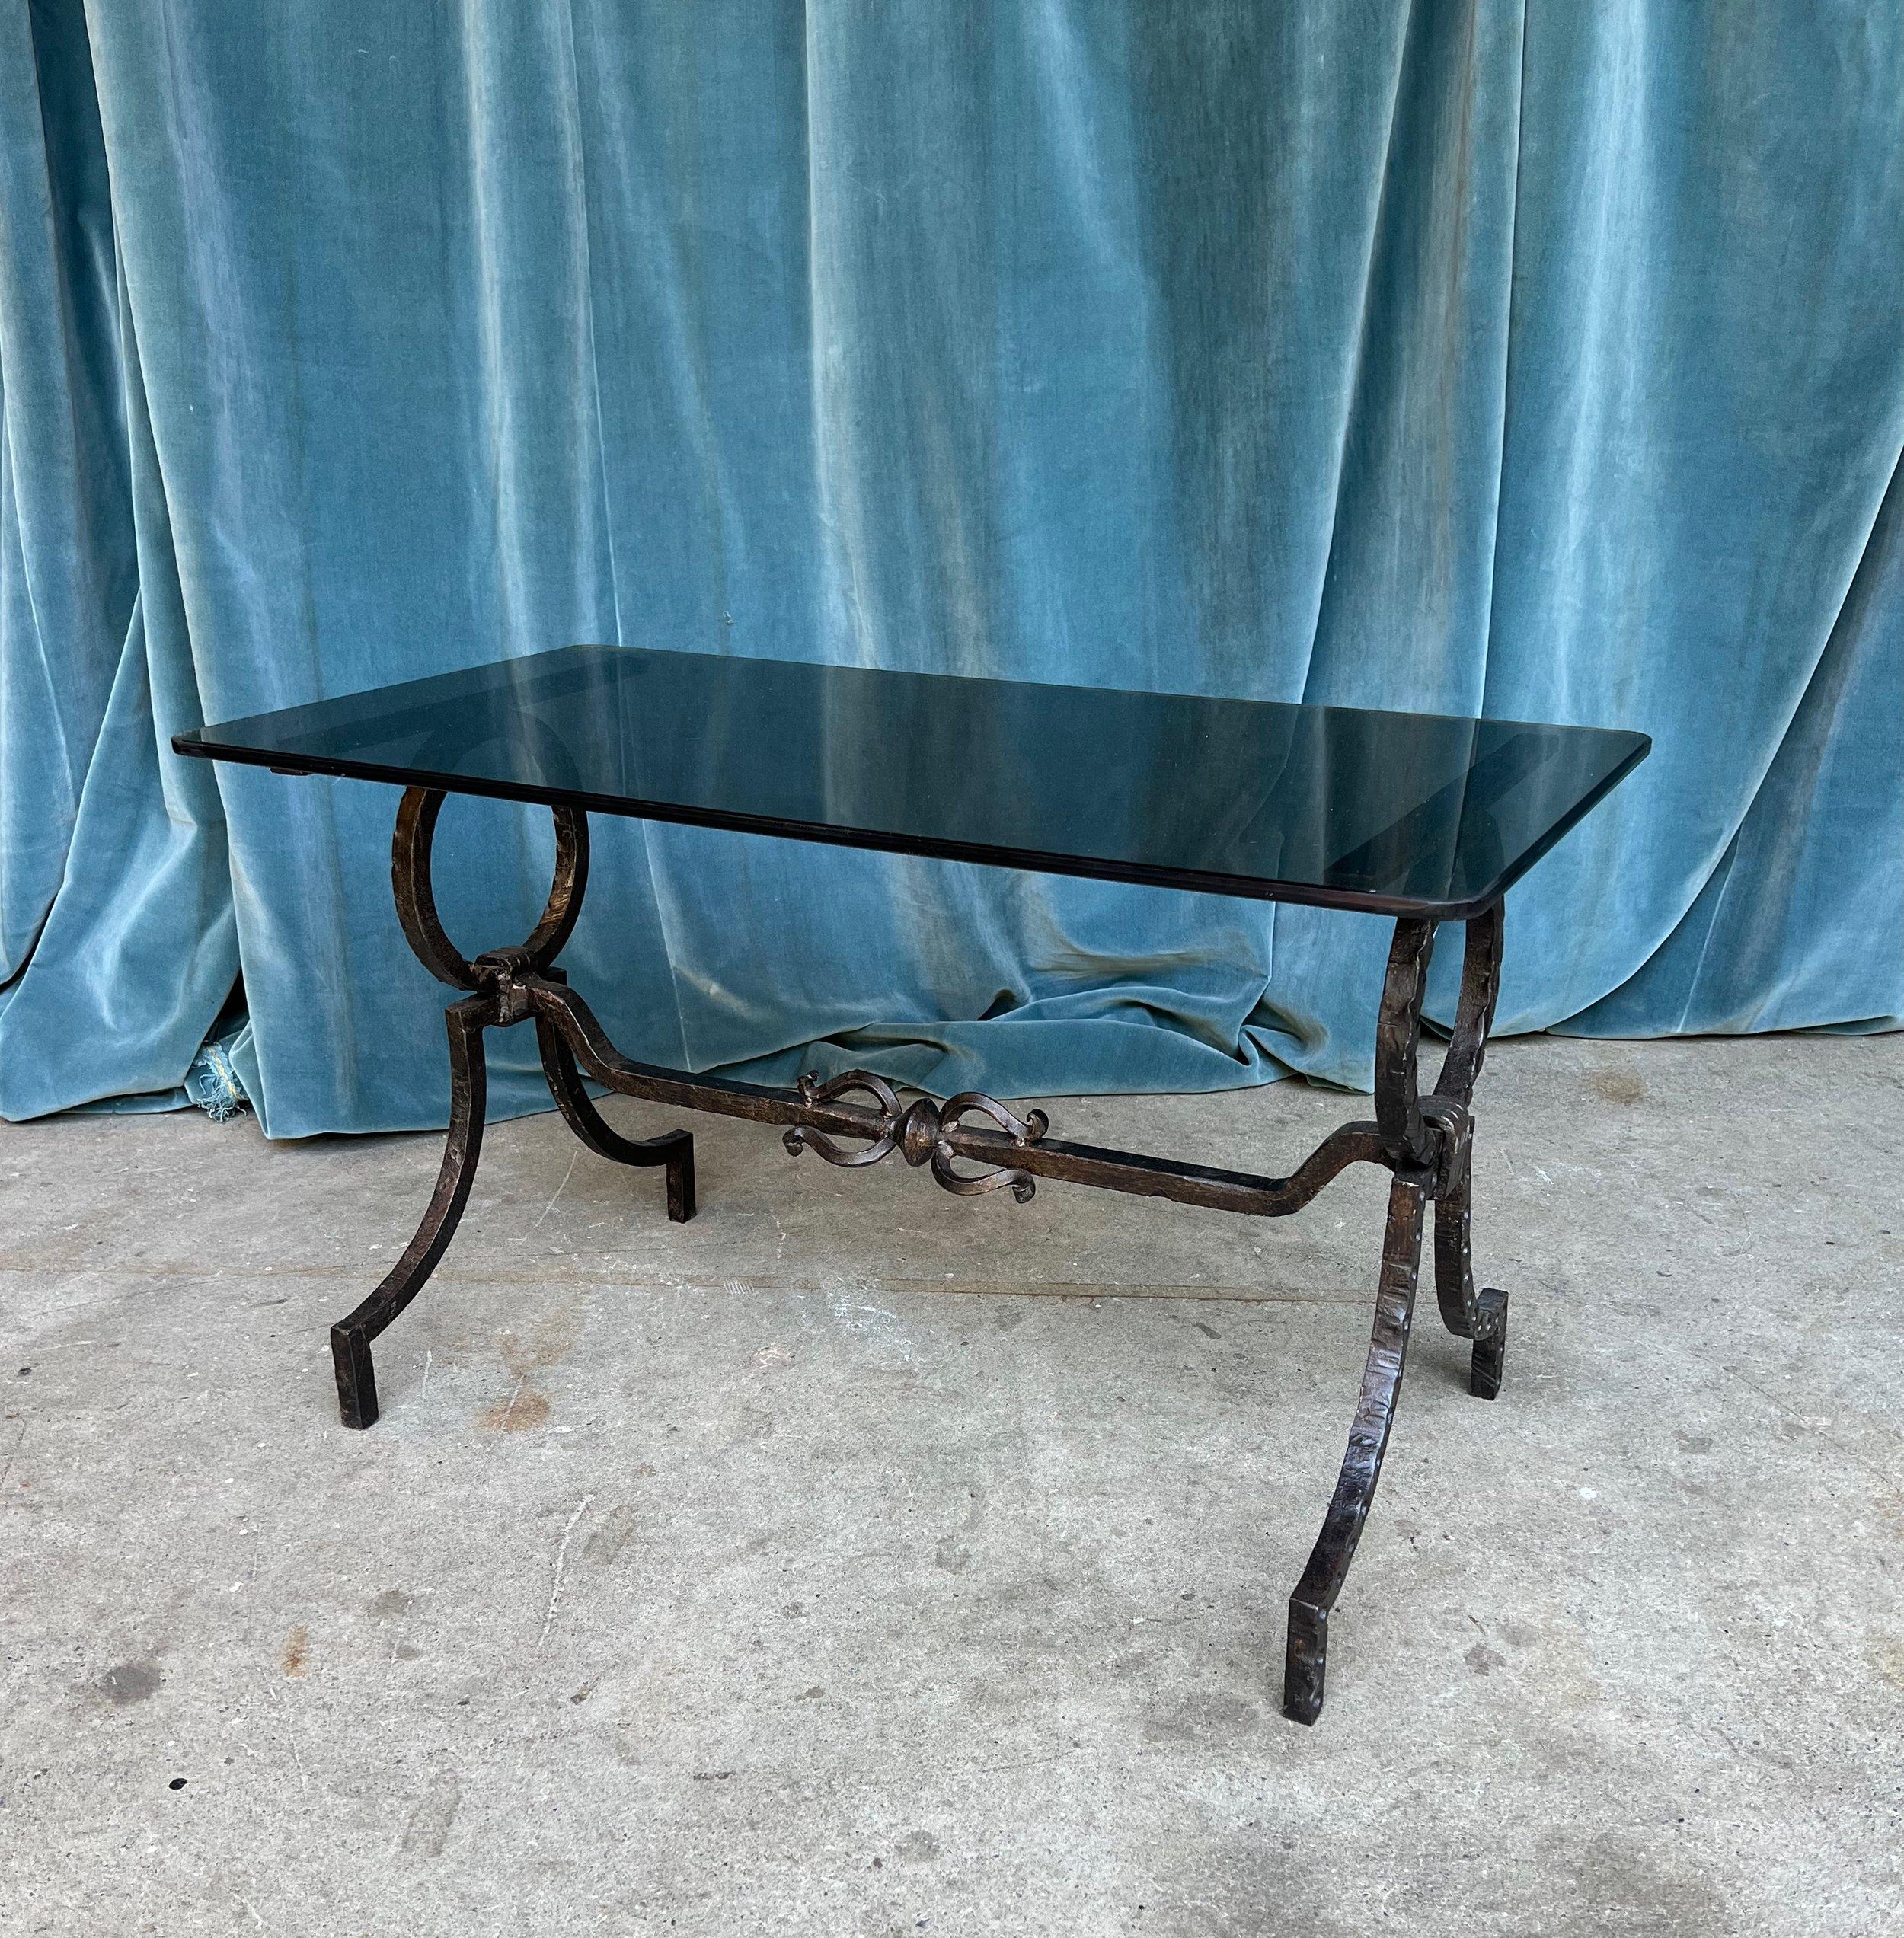 Cette étonnante table basse espagnole des années 1950 en fer forgé avec verre gris fumé dégage une élégance et une sophistication intemporelles. La belle base en fer noir, ornée de grands éléments circulaires et reposant sur des pieds gracieusement